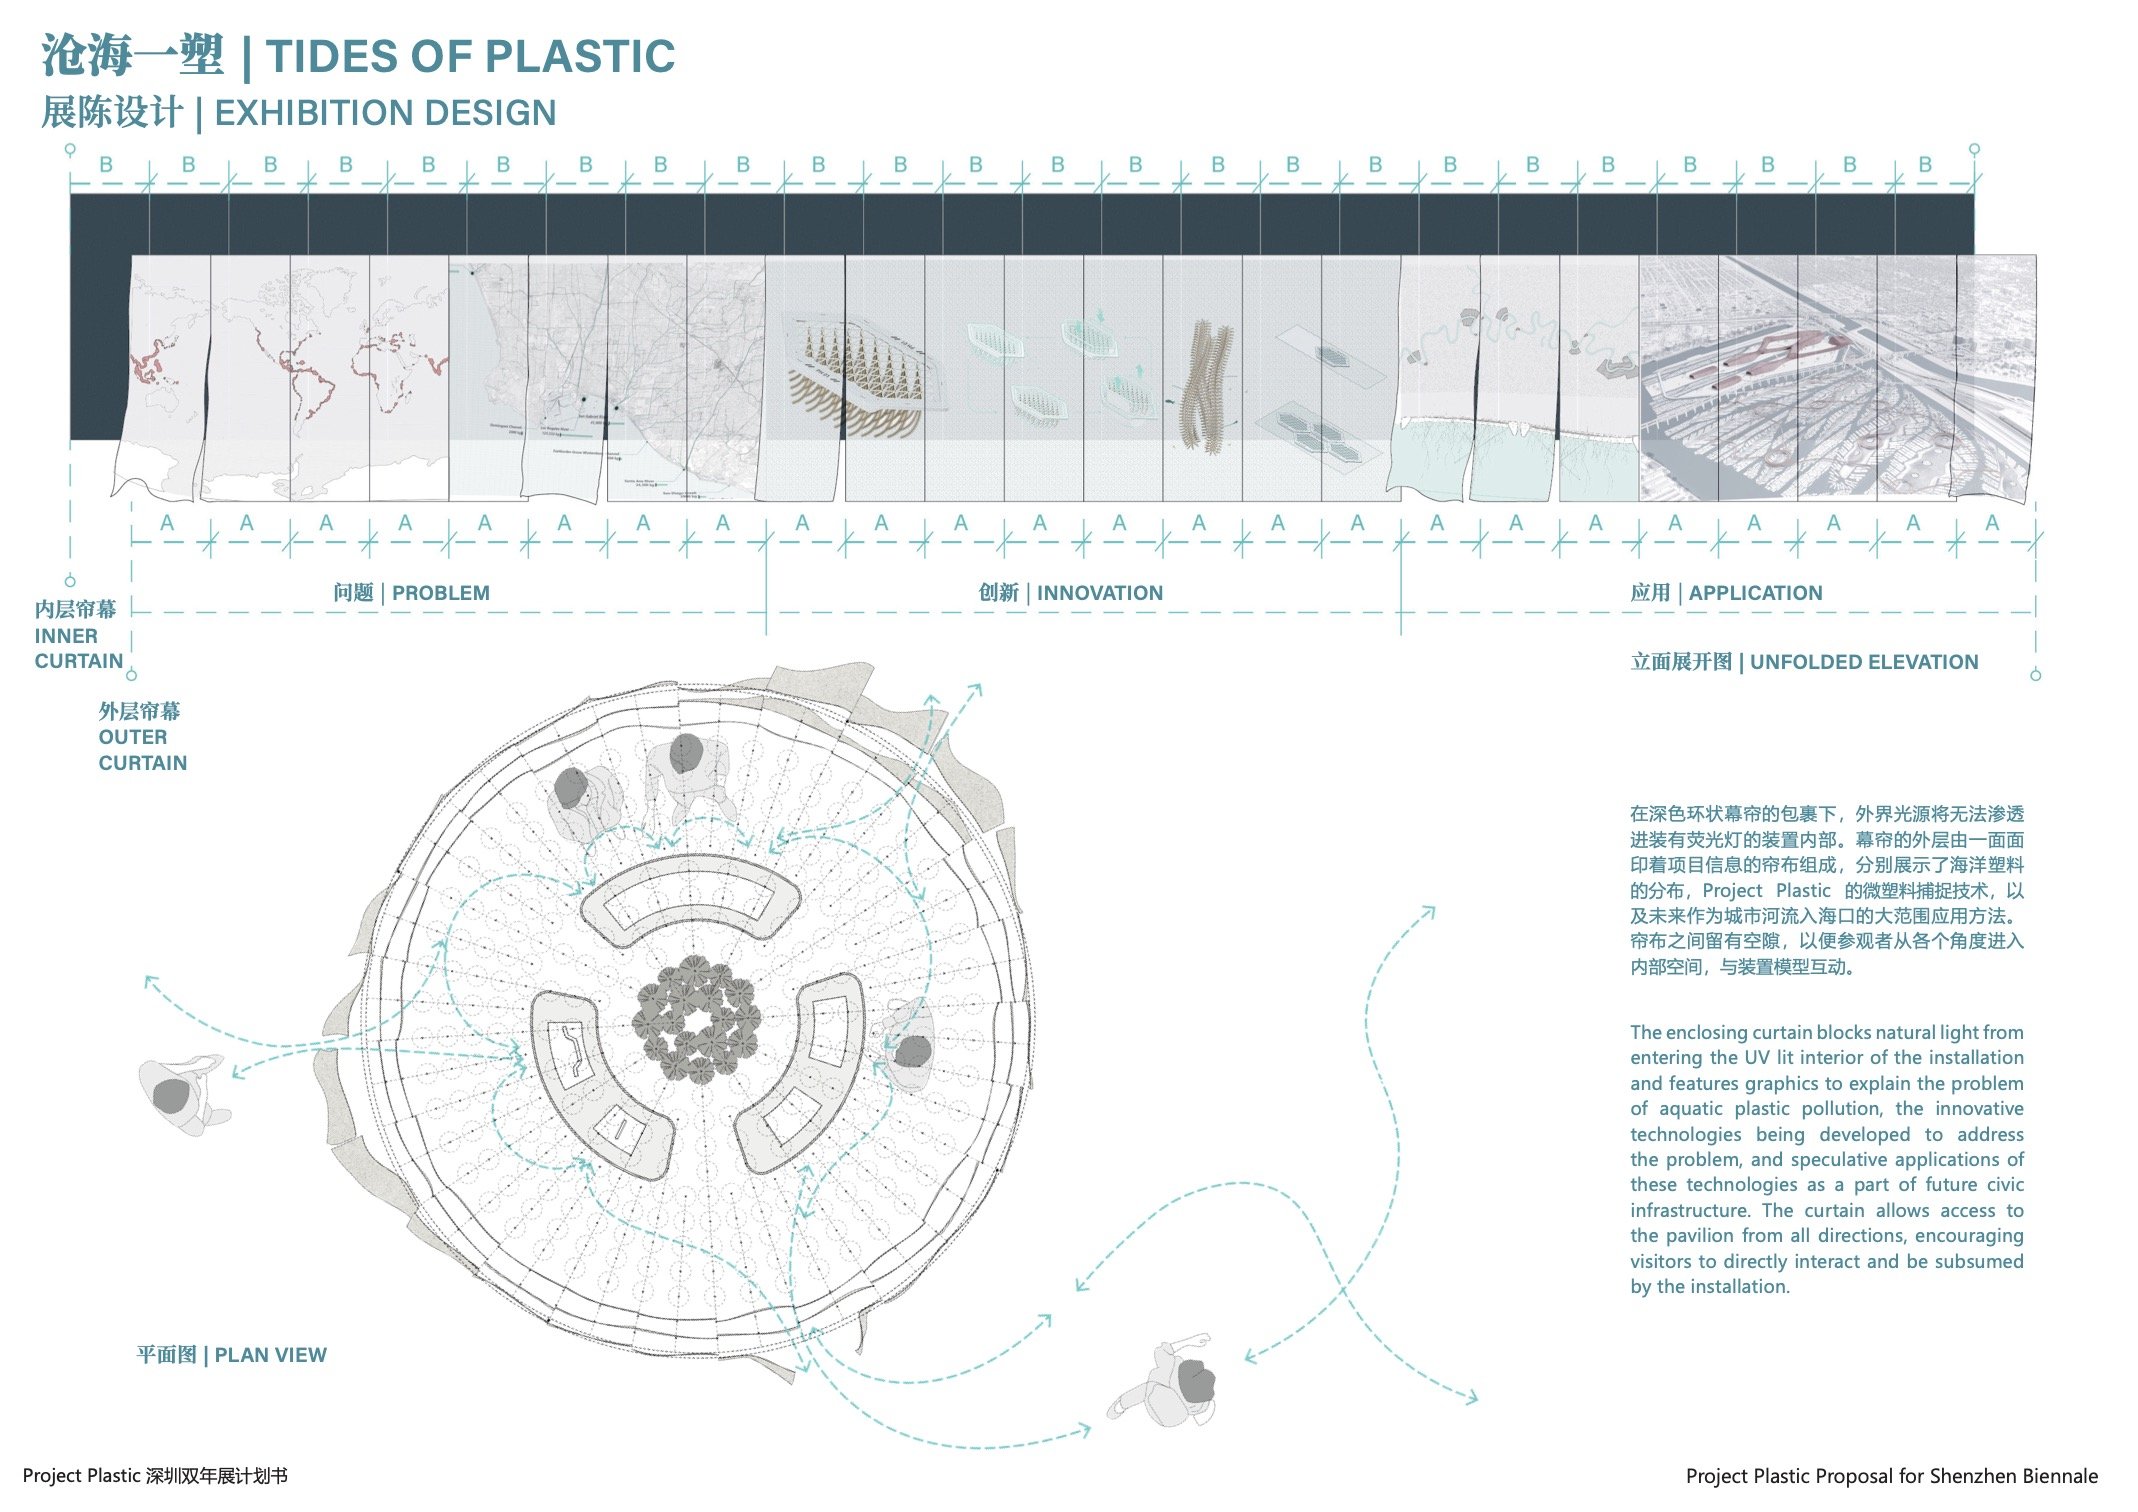 [FINAL] Project Plastic_Shenzhen Biennale8.jpg